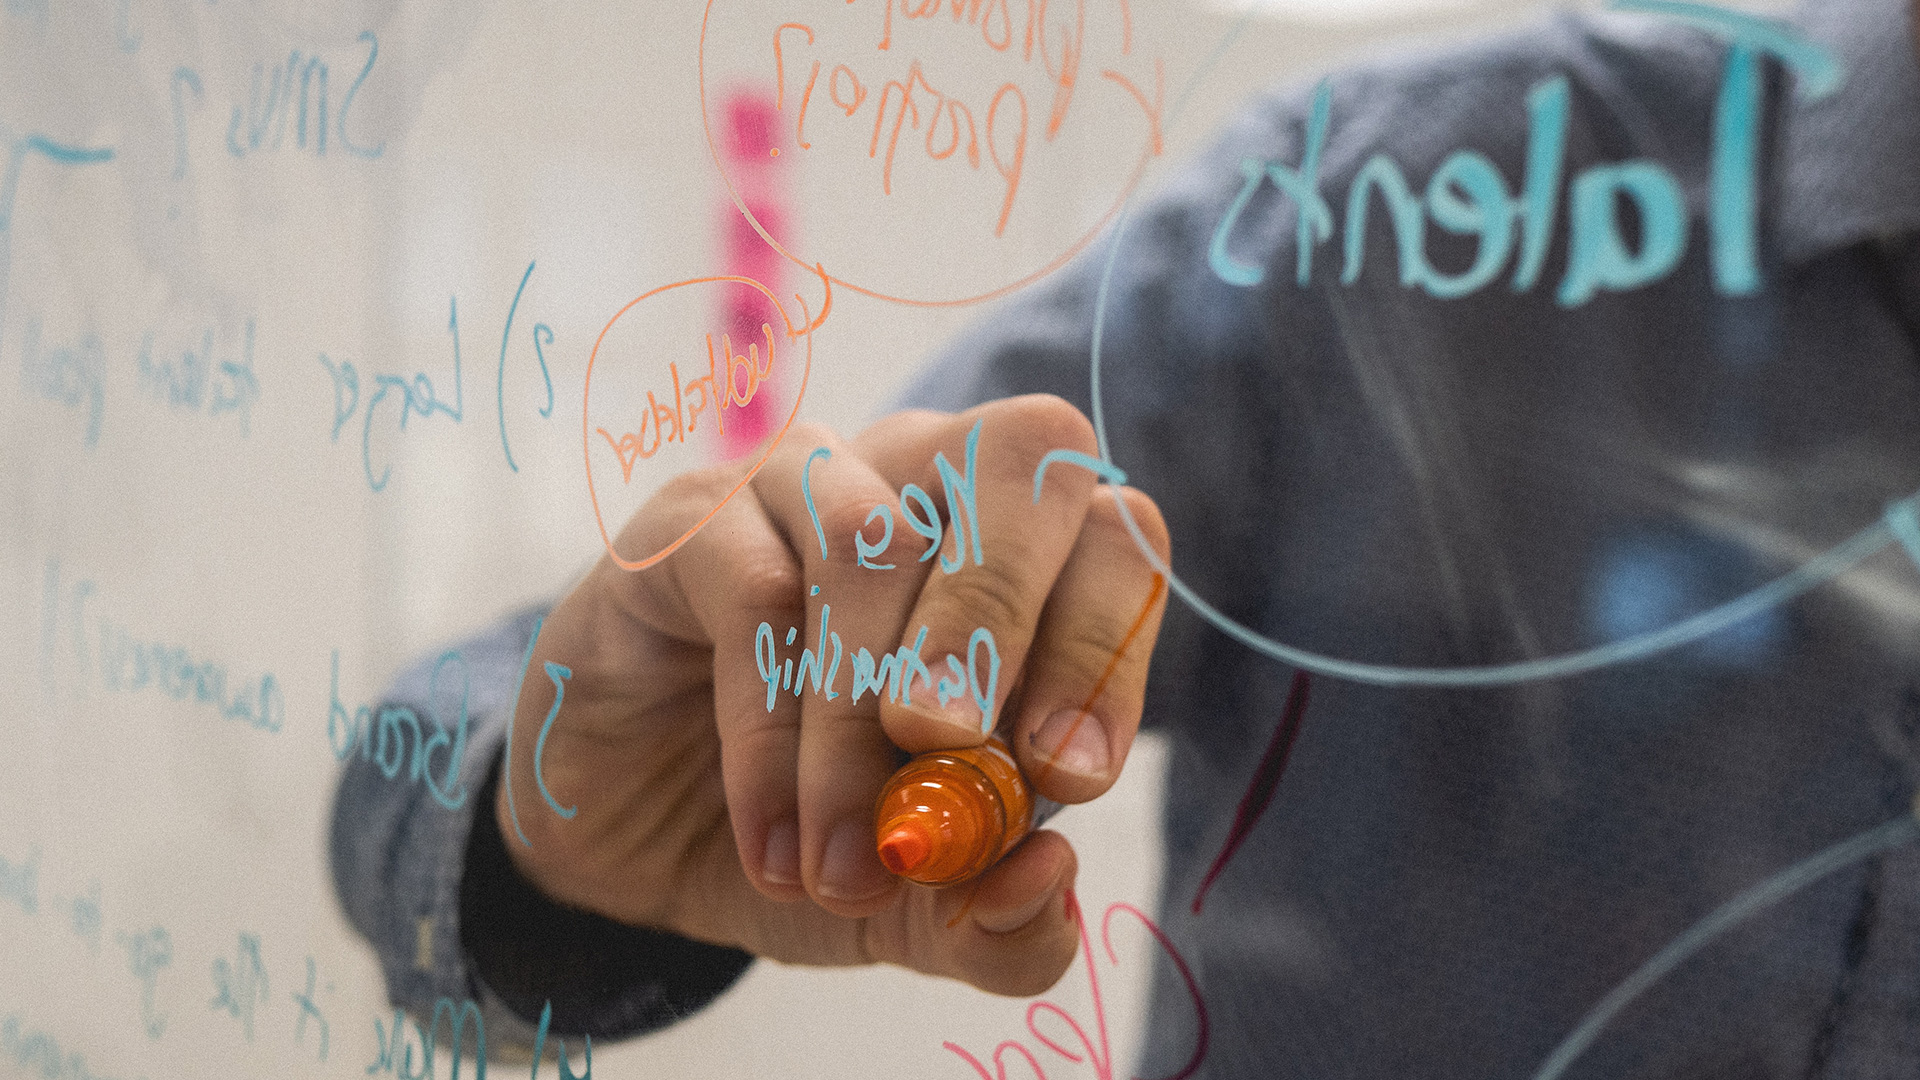 Una mano sostiene un rotulador naranja tras una pizarra de cristal, donde hay anotaciones hechas en color azul y naranja.